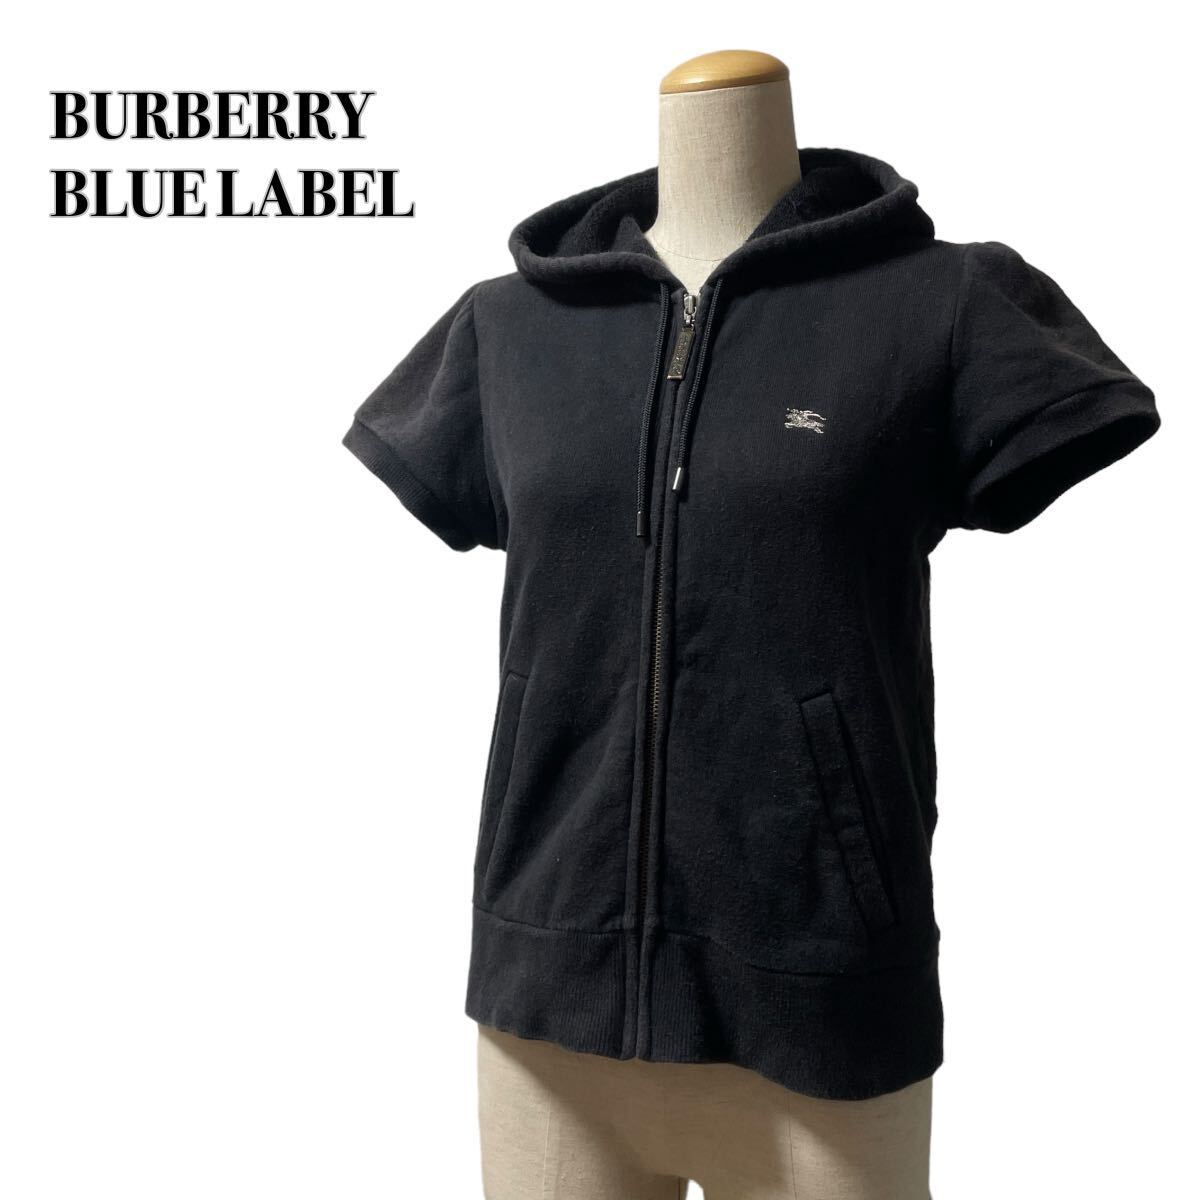 BURBERRY BLUE LABEL バーバリーブルーレーベル ジップアップパーカー 半袖ホース刺繍 38 M 黒ブラック 三陽商会_画像1